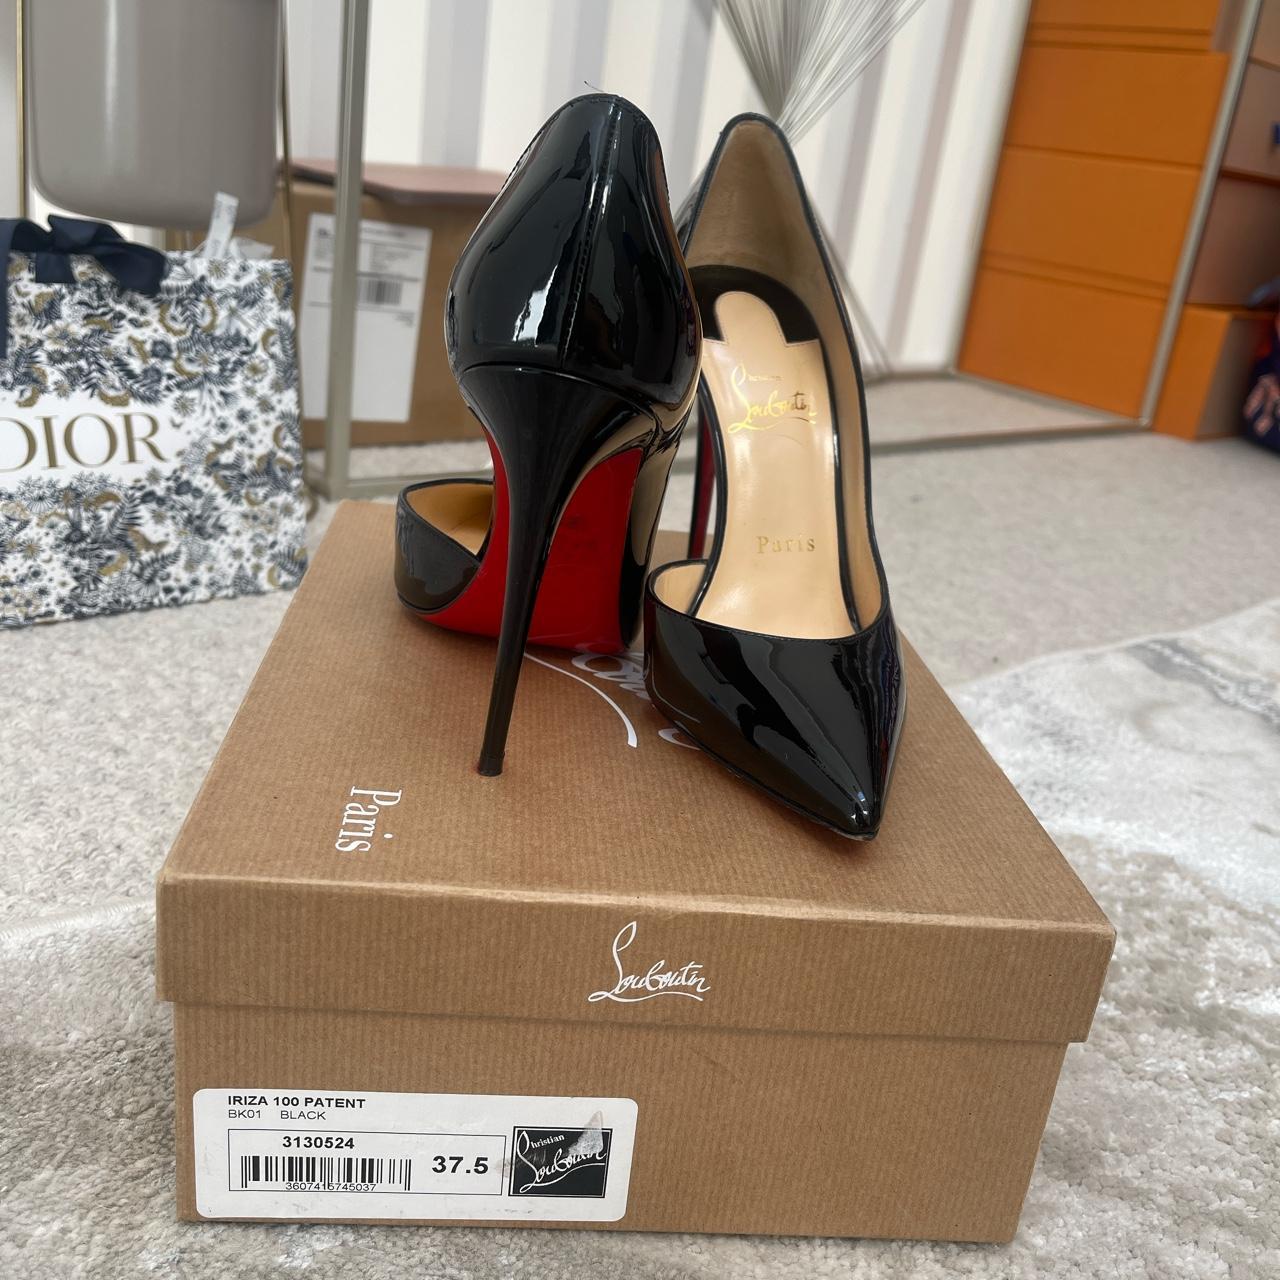 IRIZA 100 patent Louboutin heels Size 37.5 Worn... - Depop